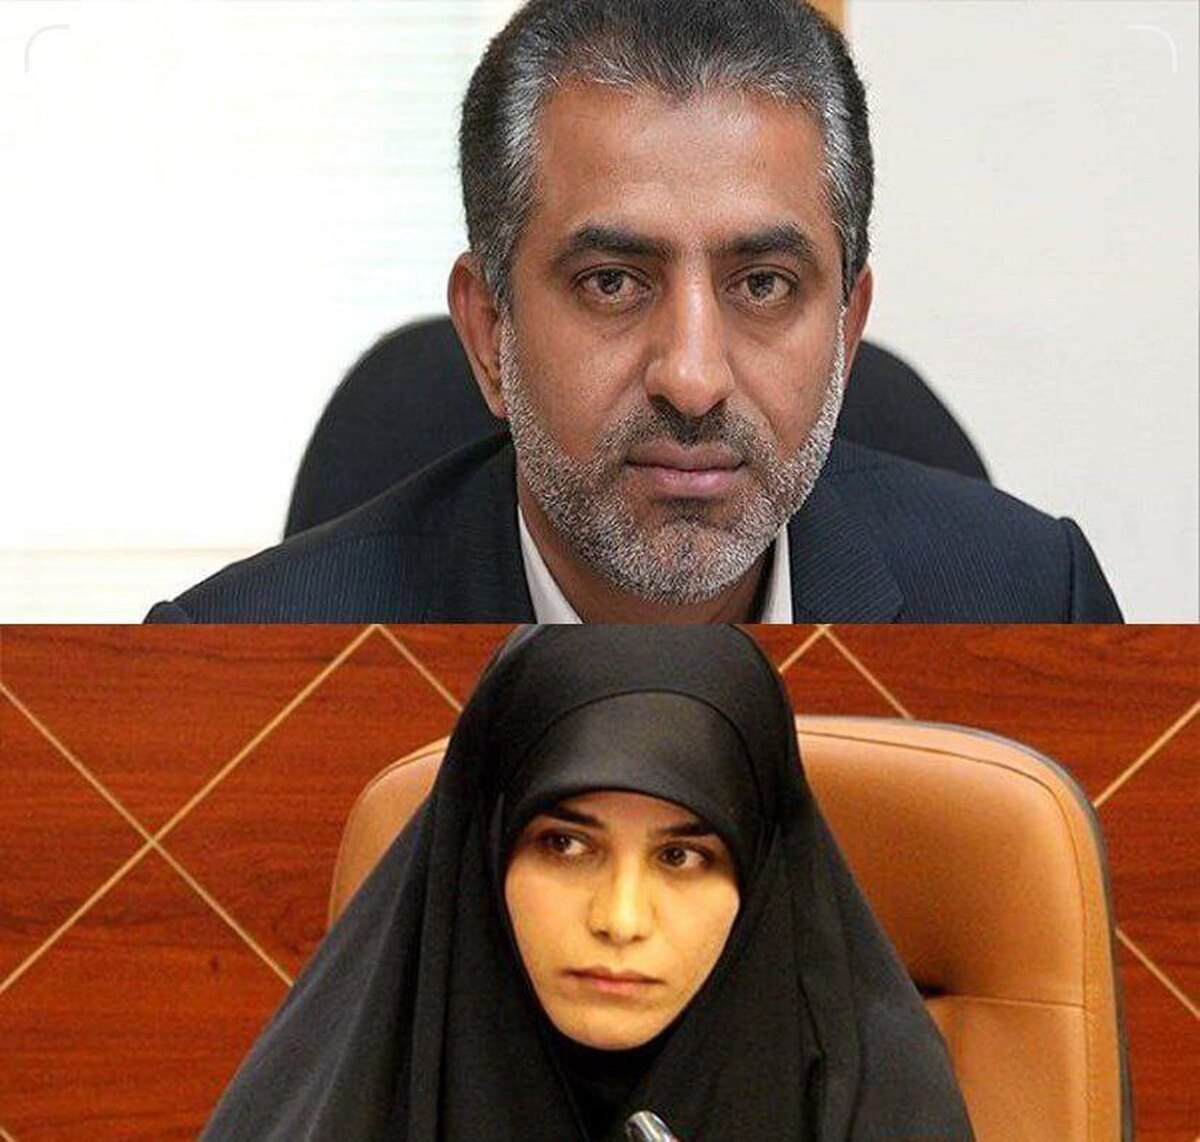 اولین خواهر و برادری که از تهران راهی مجلس شورای اسلامی شدند+عکس